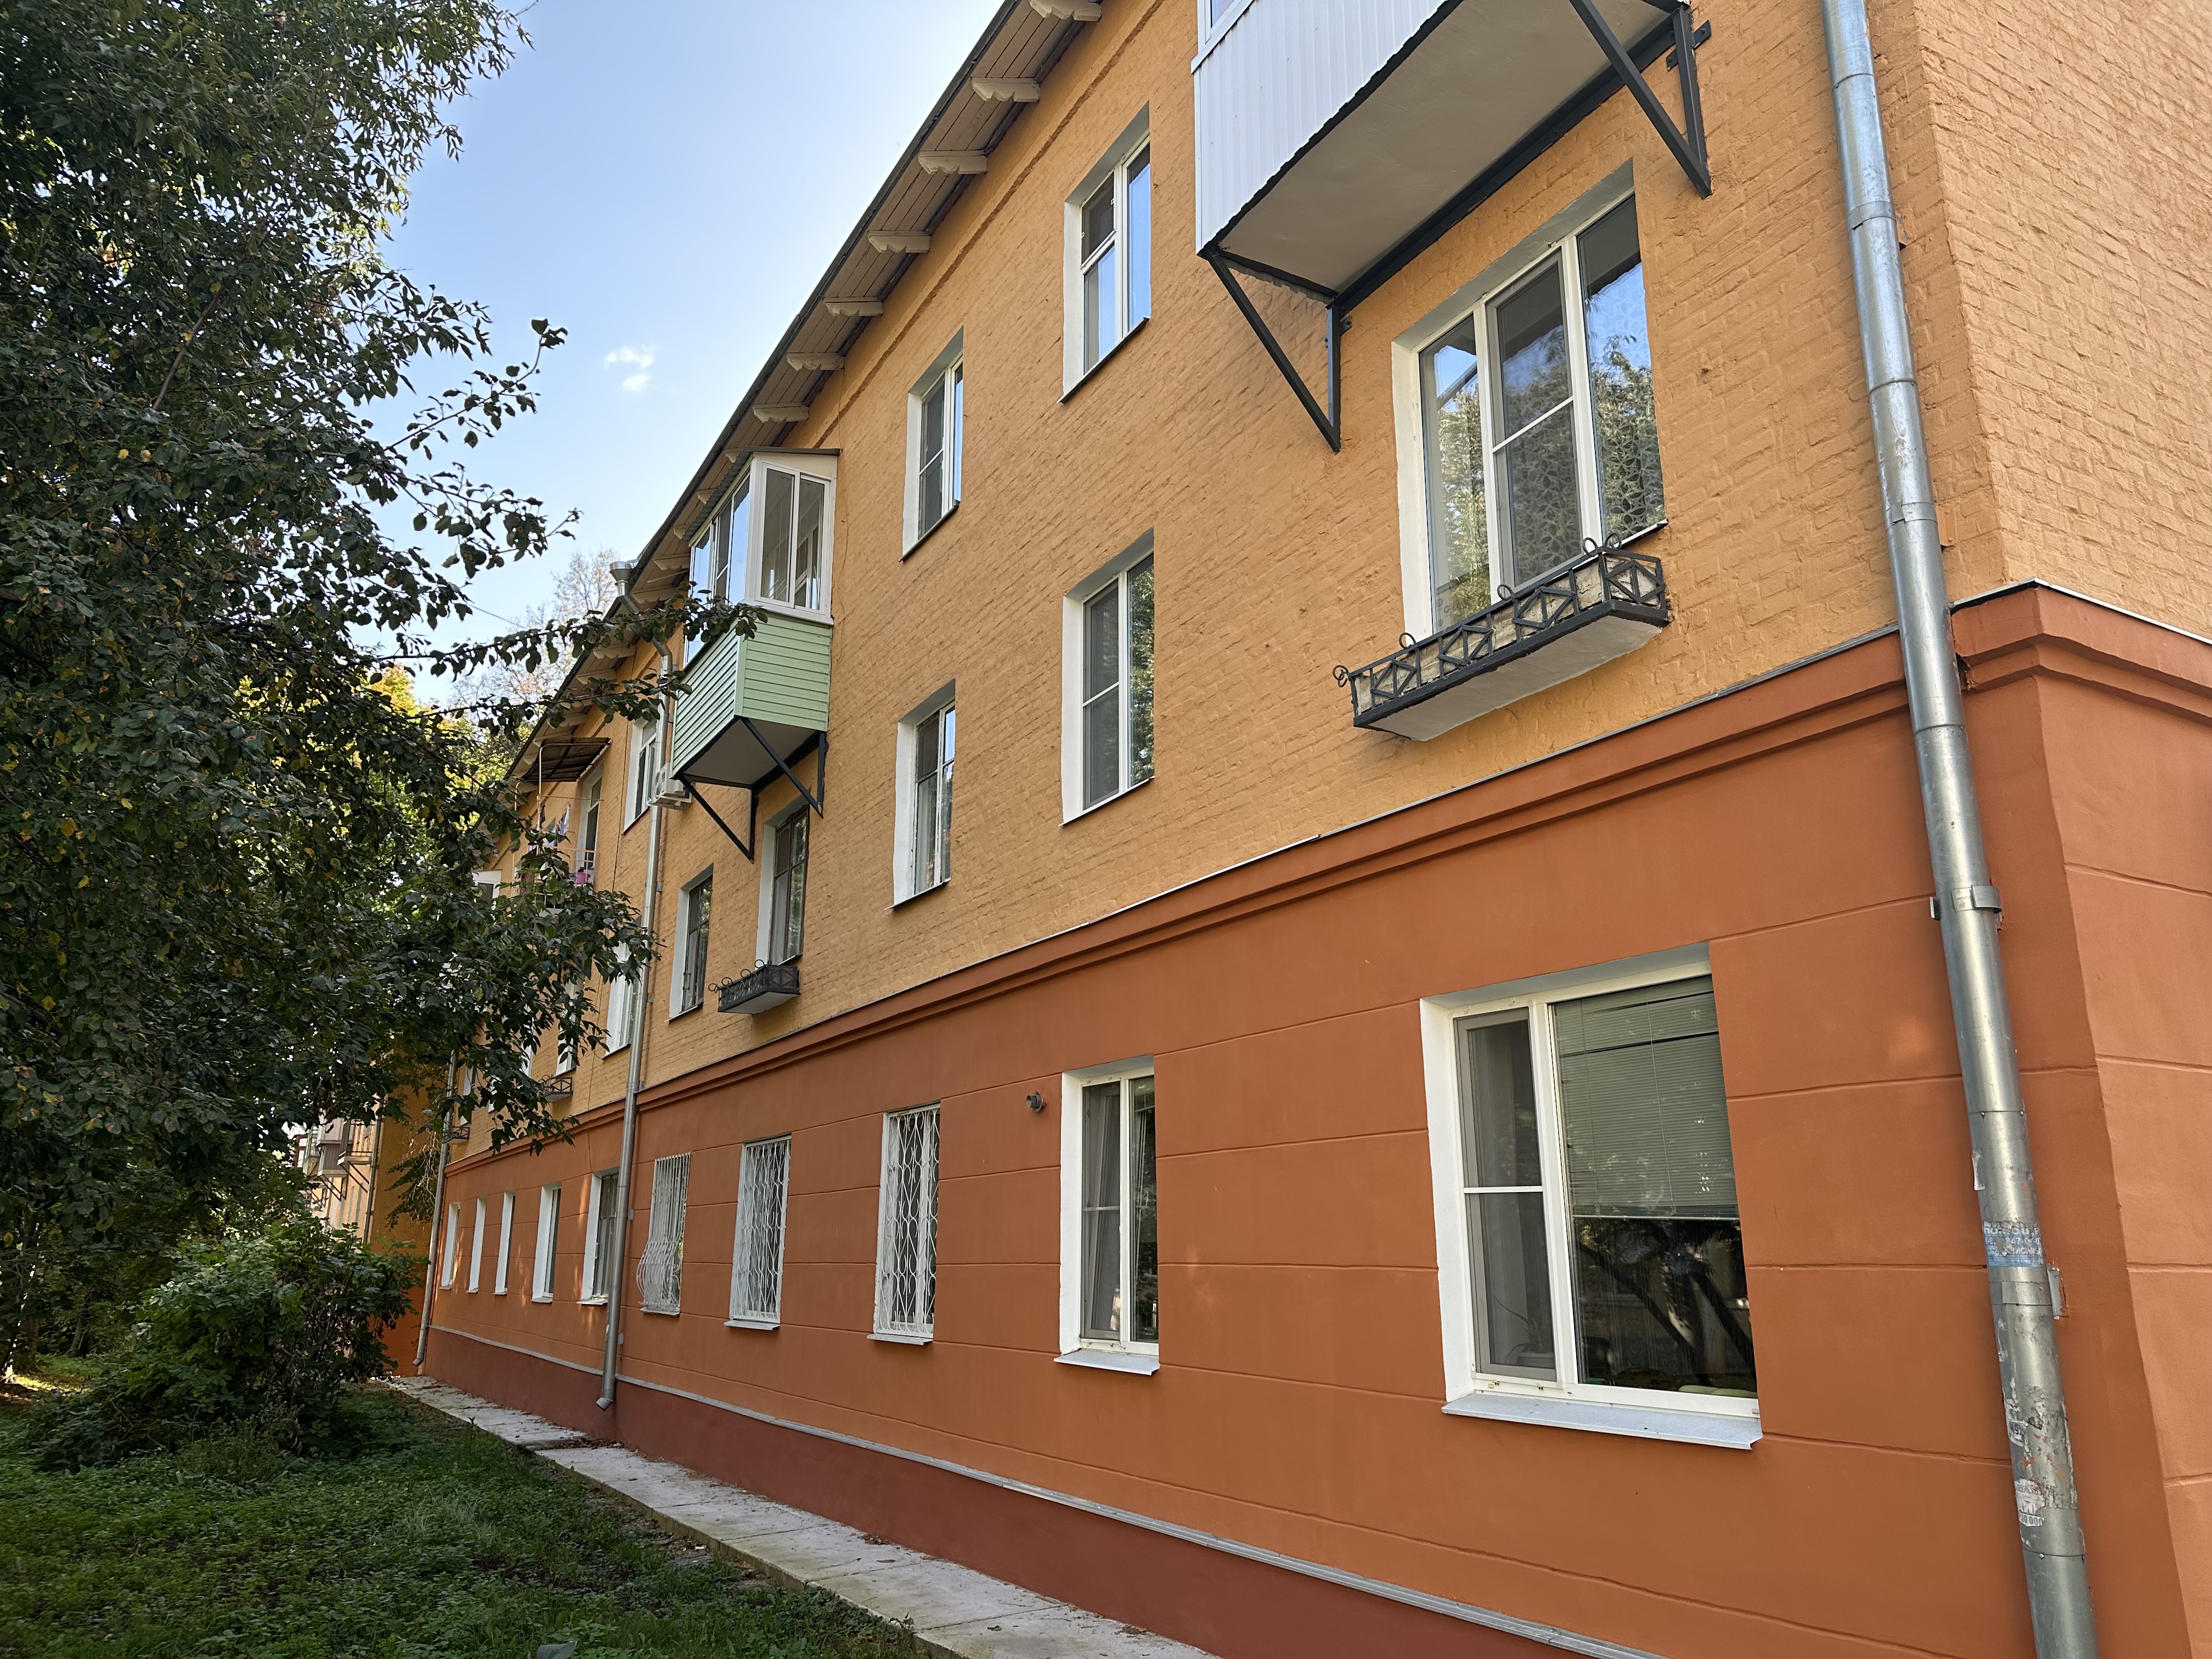 Ремонт фасадов многоквартирных домов по улице Шухова в городе Туле